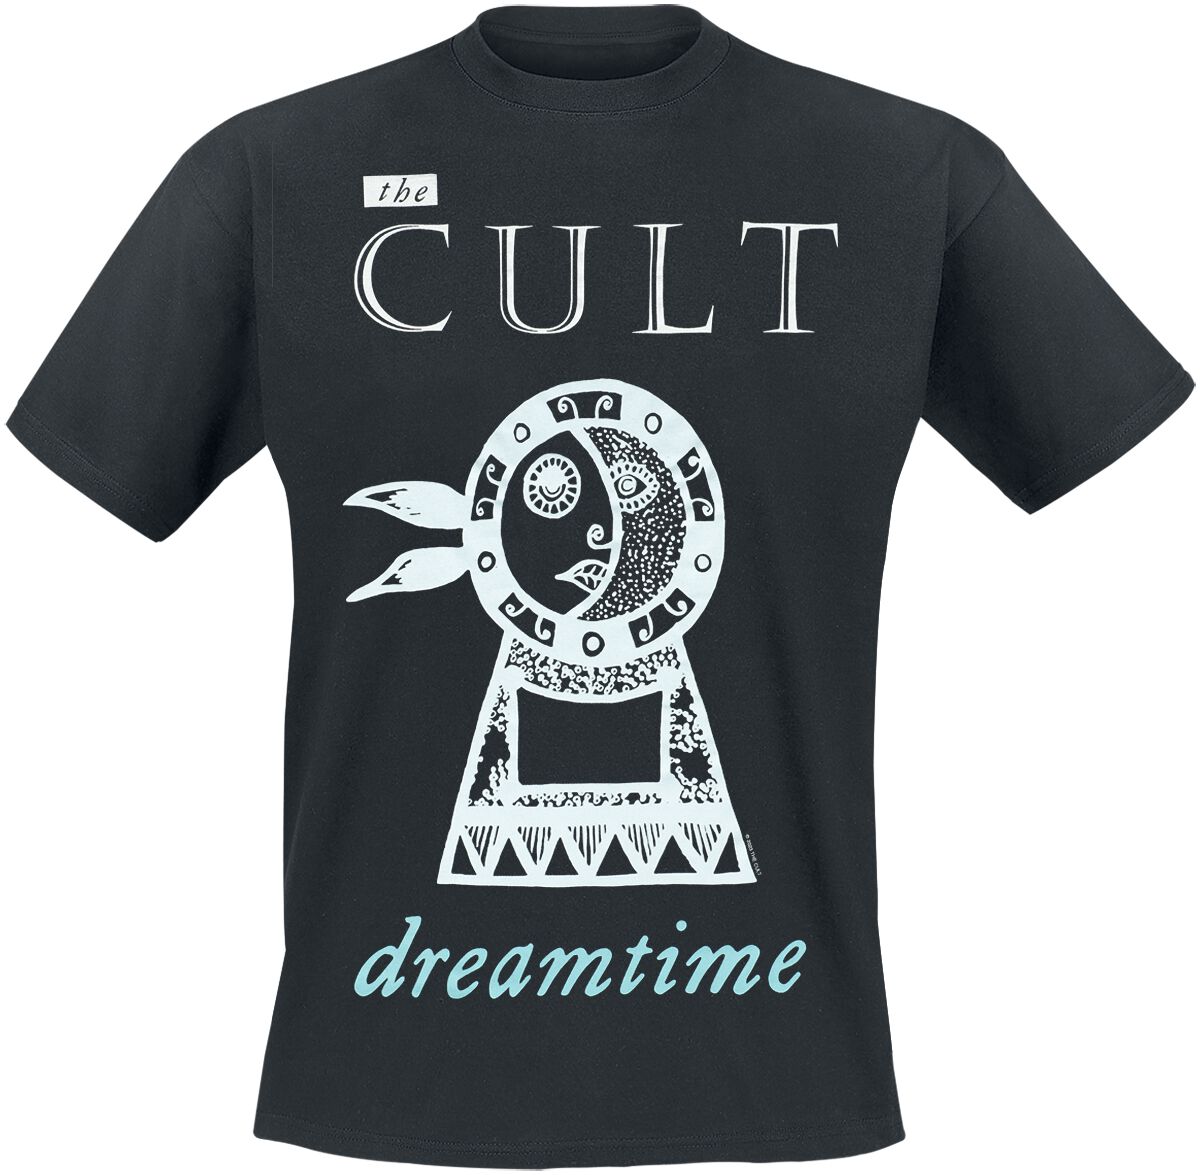 The Cult T-Shirt - Dreamtime - S bis 4XL - für Männer - Größe S - schwarz  - Lizenziertes Merchandise!